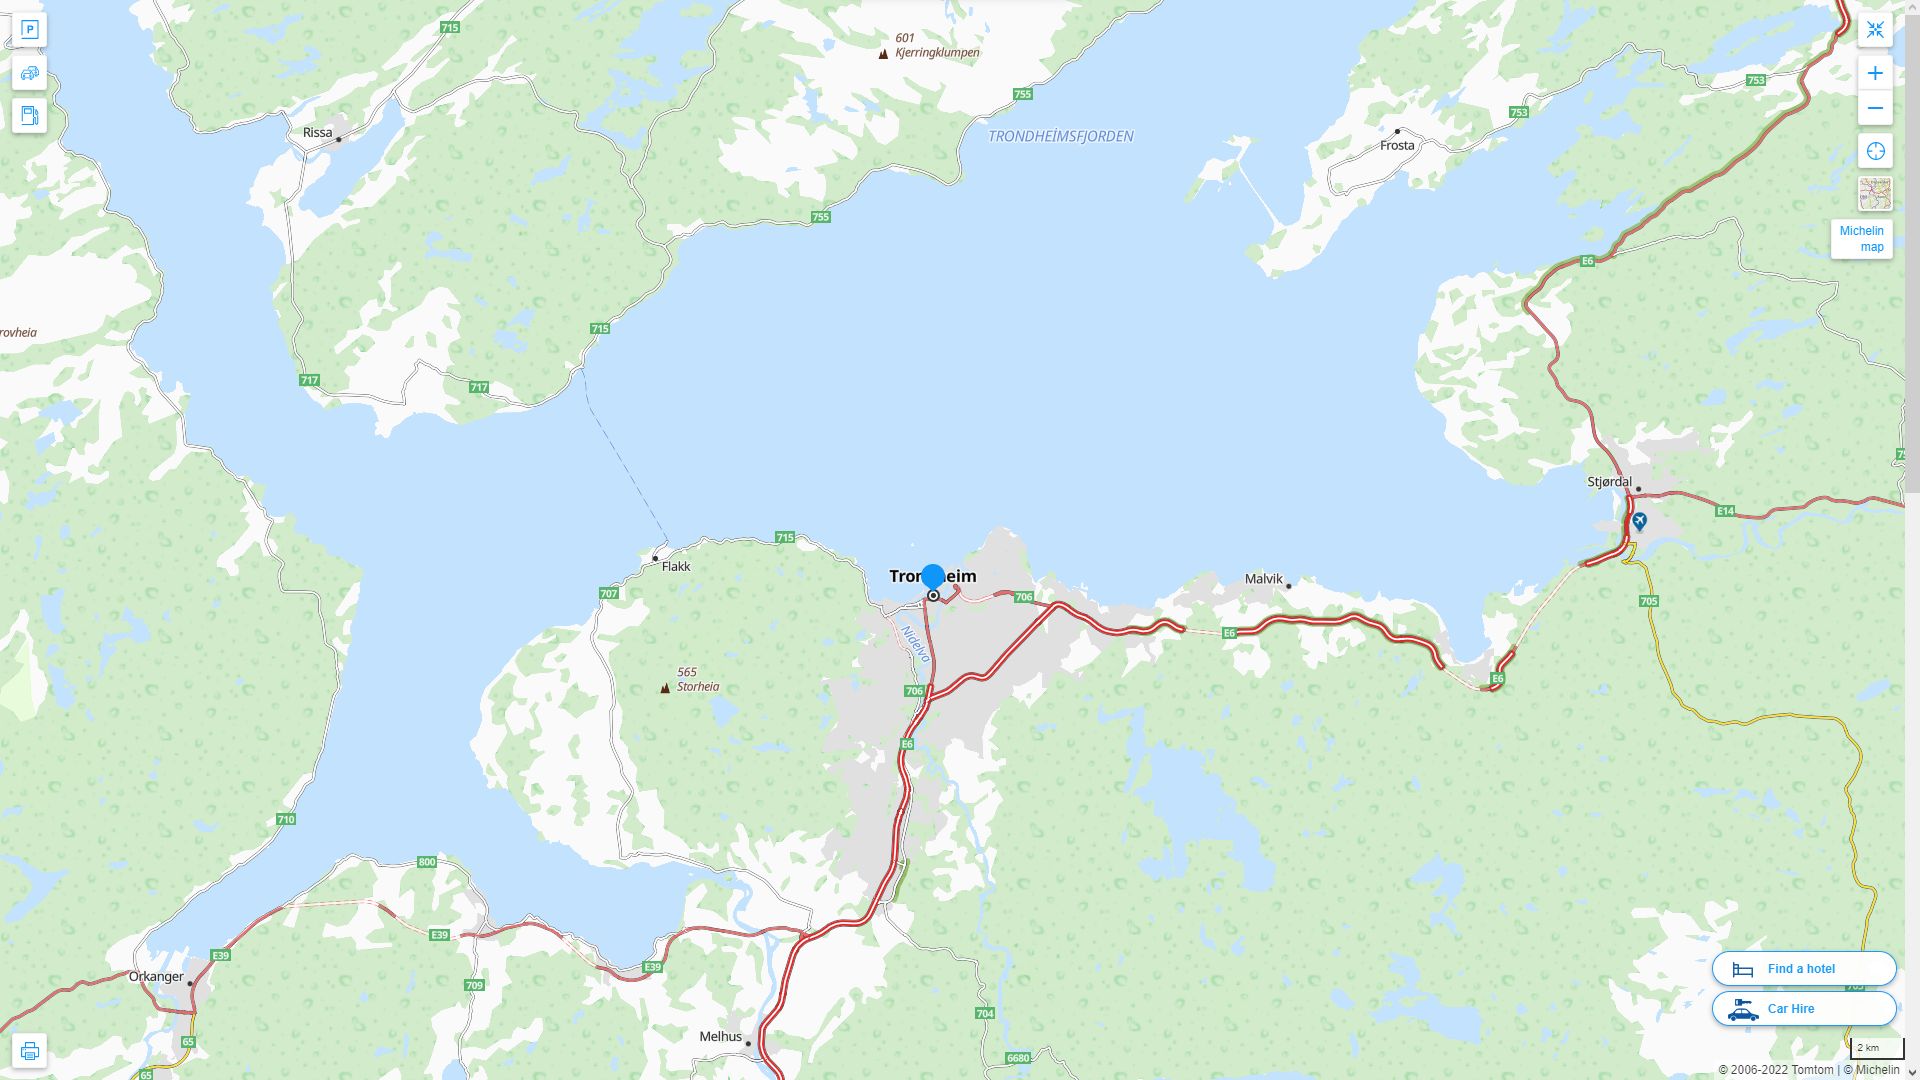 Trondheim Norvege Autoroute et carte routiere